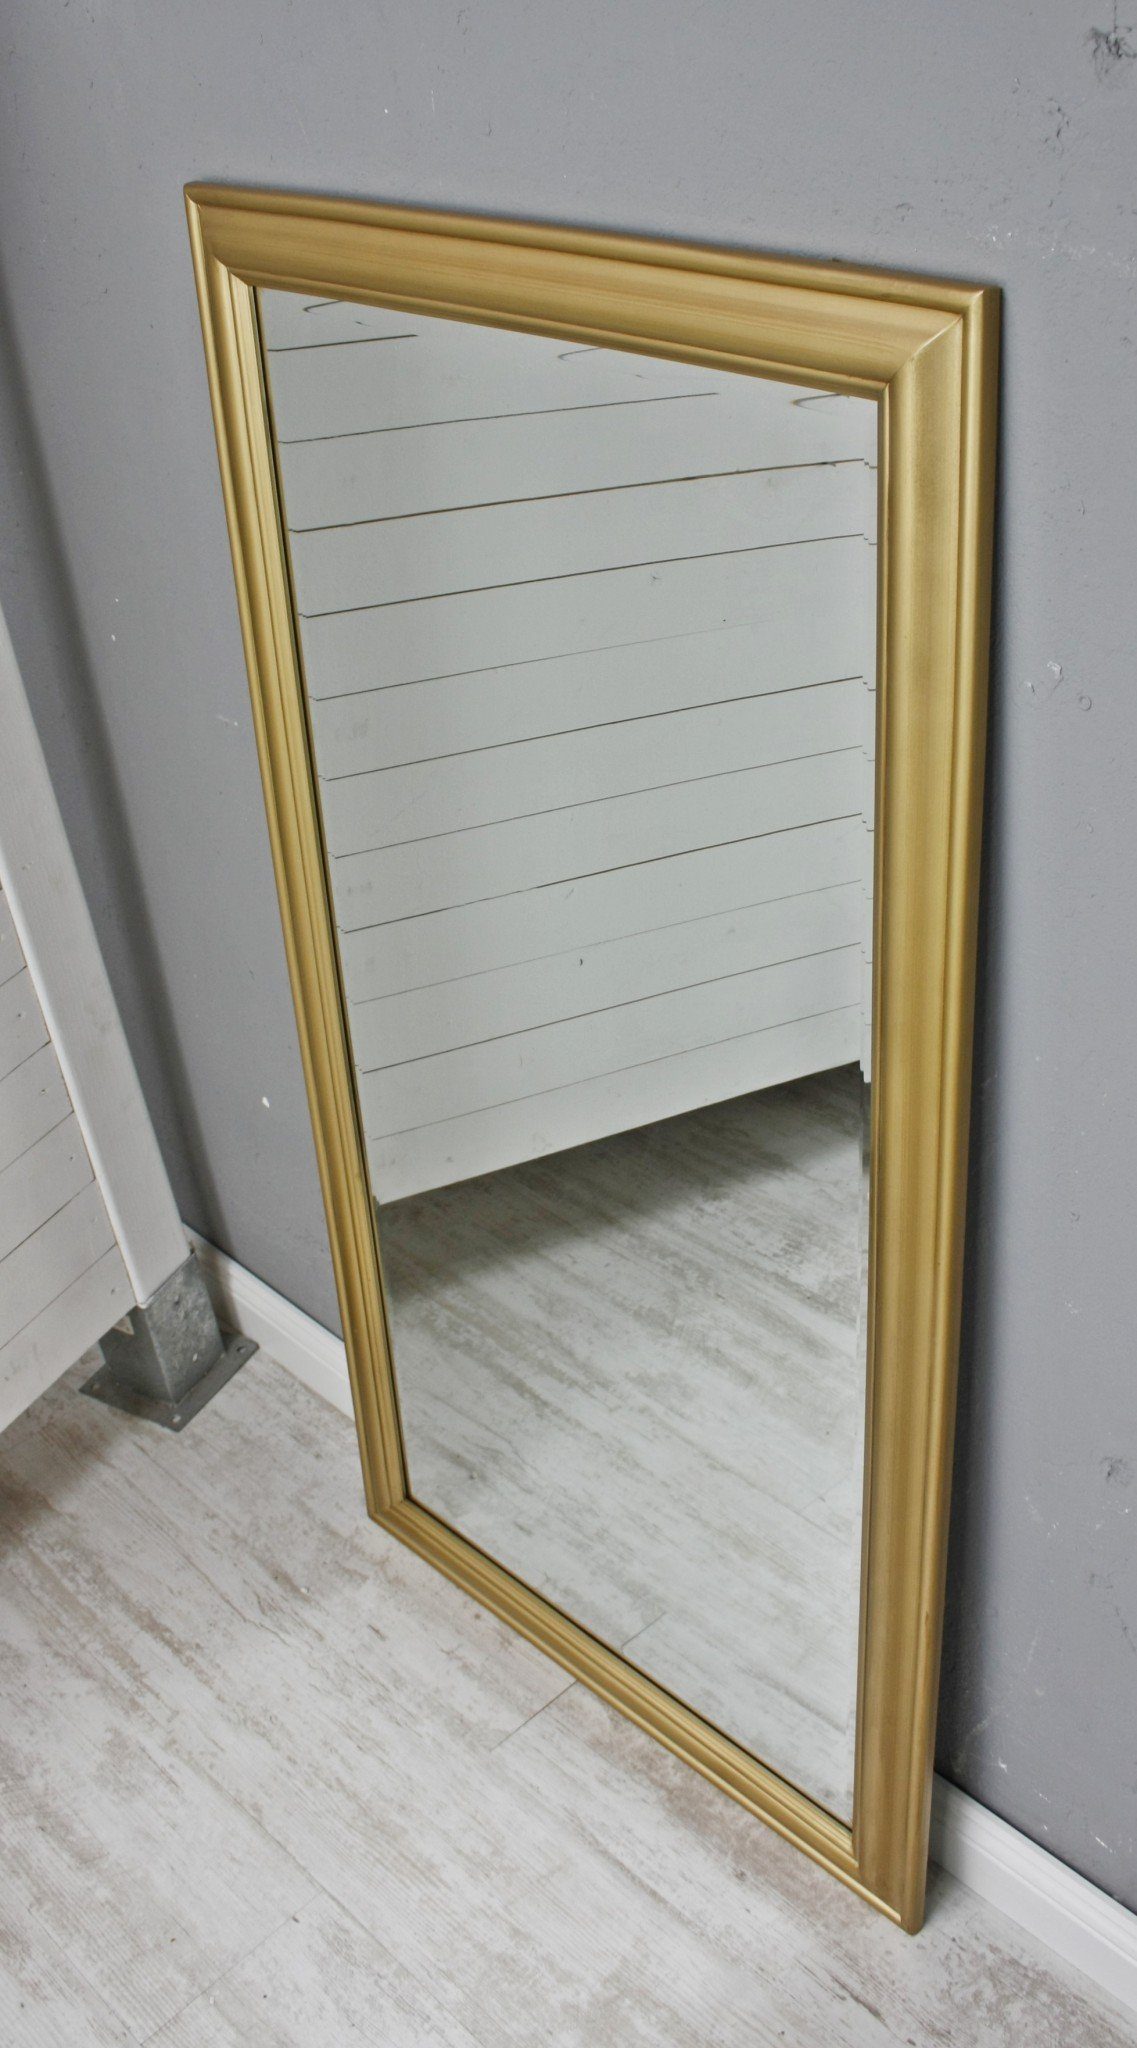 Spiegel: schlicht Spiegel 132x72x7 132x72x5cm, Landhaus Badspiegel Klassisch Wandspiegel Gold elbmöbel